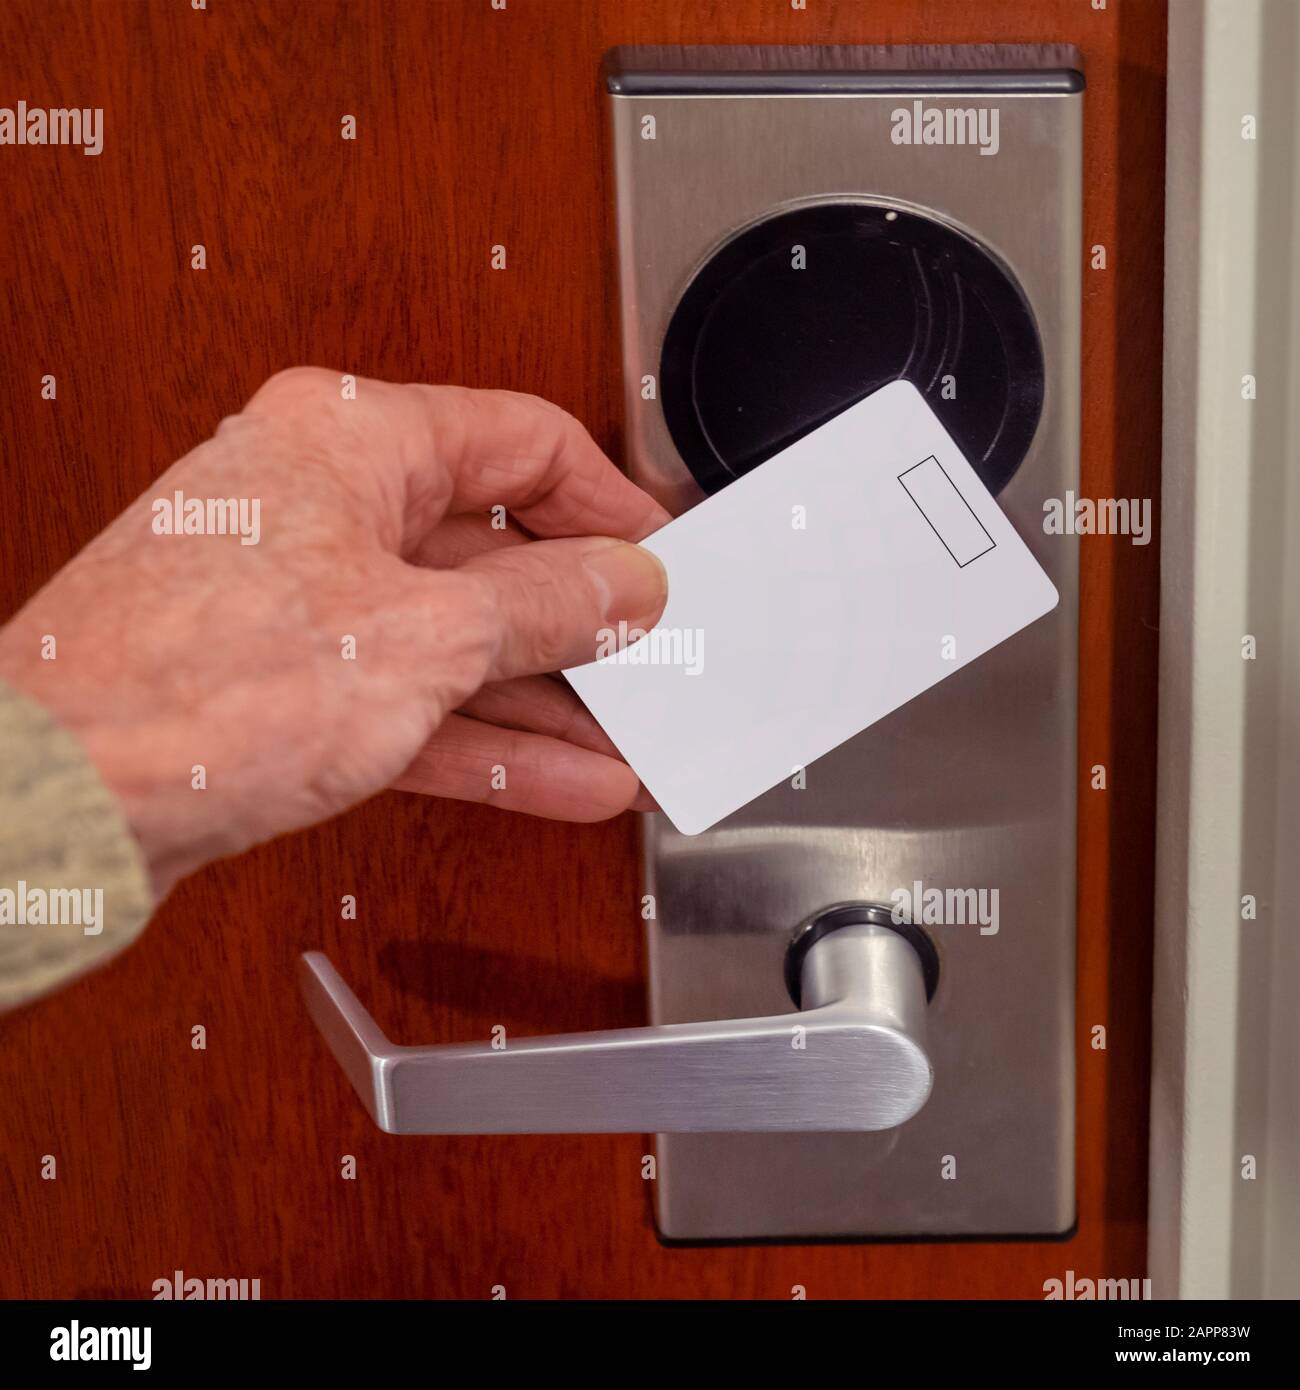 faites glisser la carte-clé pour ouvrir la porte de la chambre d'hôtel. Maintien de la carte magnétique pour la commande d'accès aux portes glisser la carte-clé pour verrouiller et déverrouiller la porte Banque D'Images